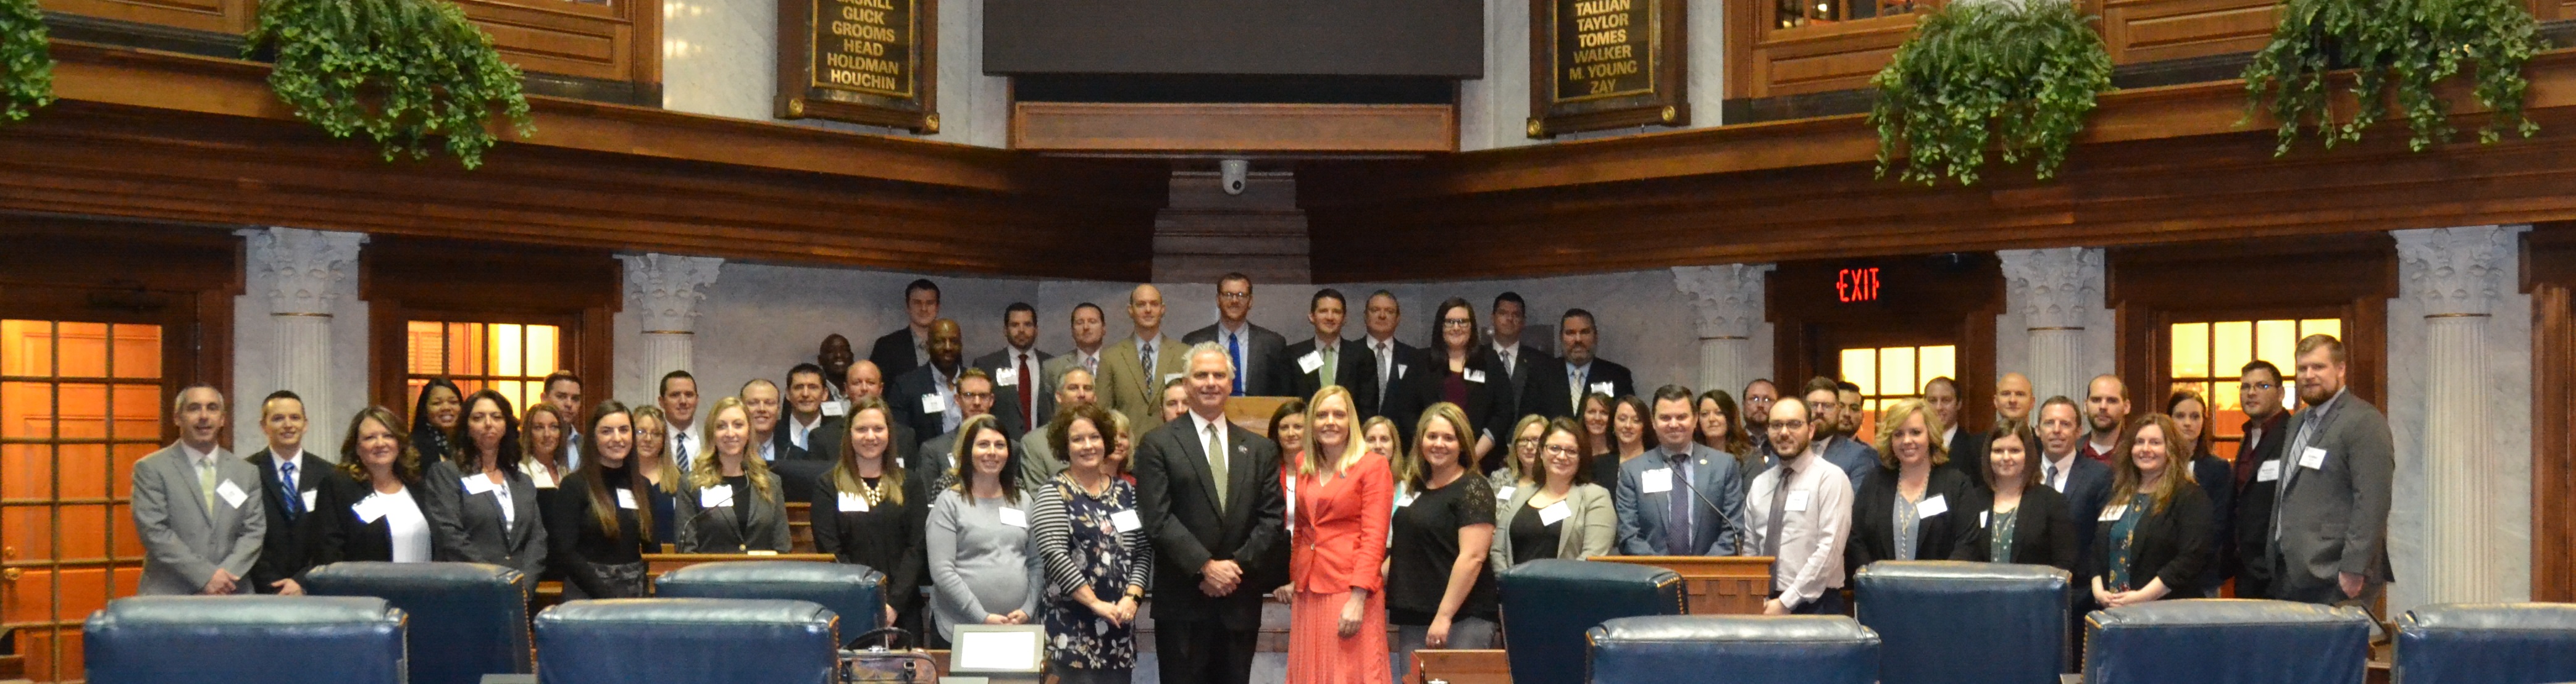 Future Leadership Division members standing in Senate chambers